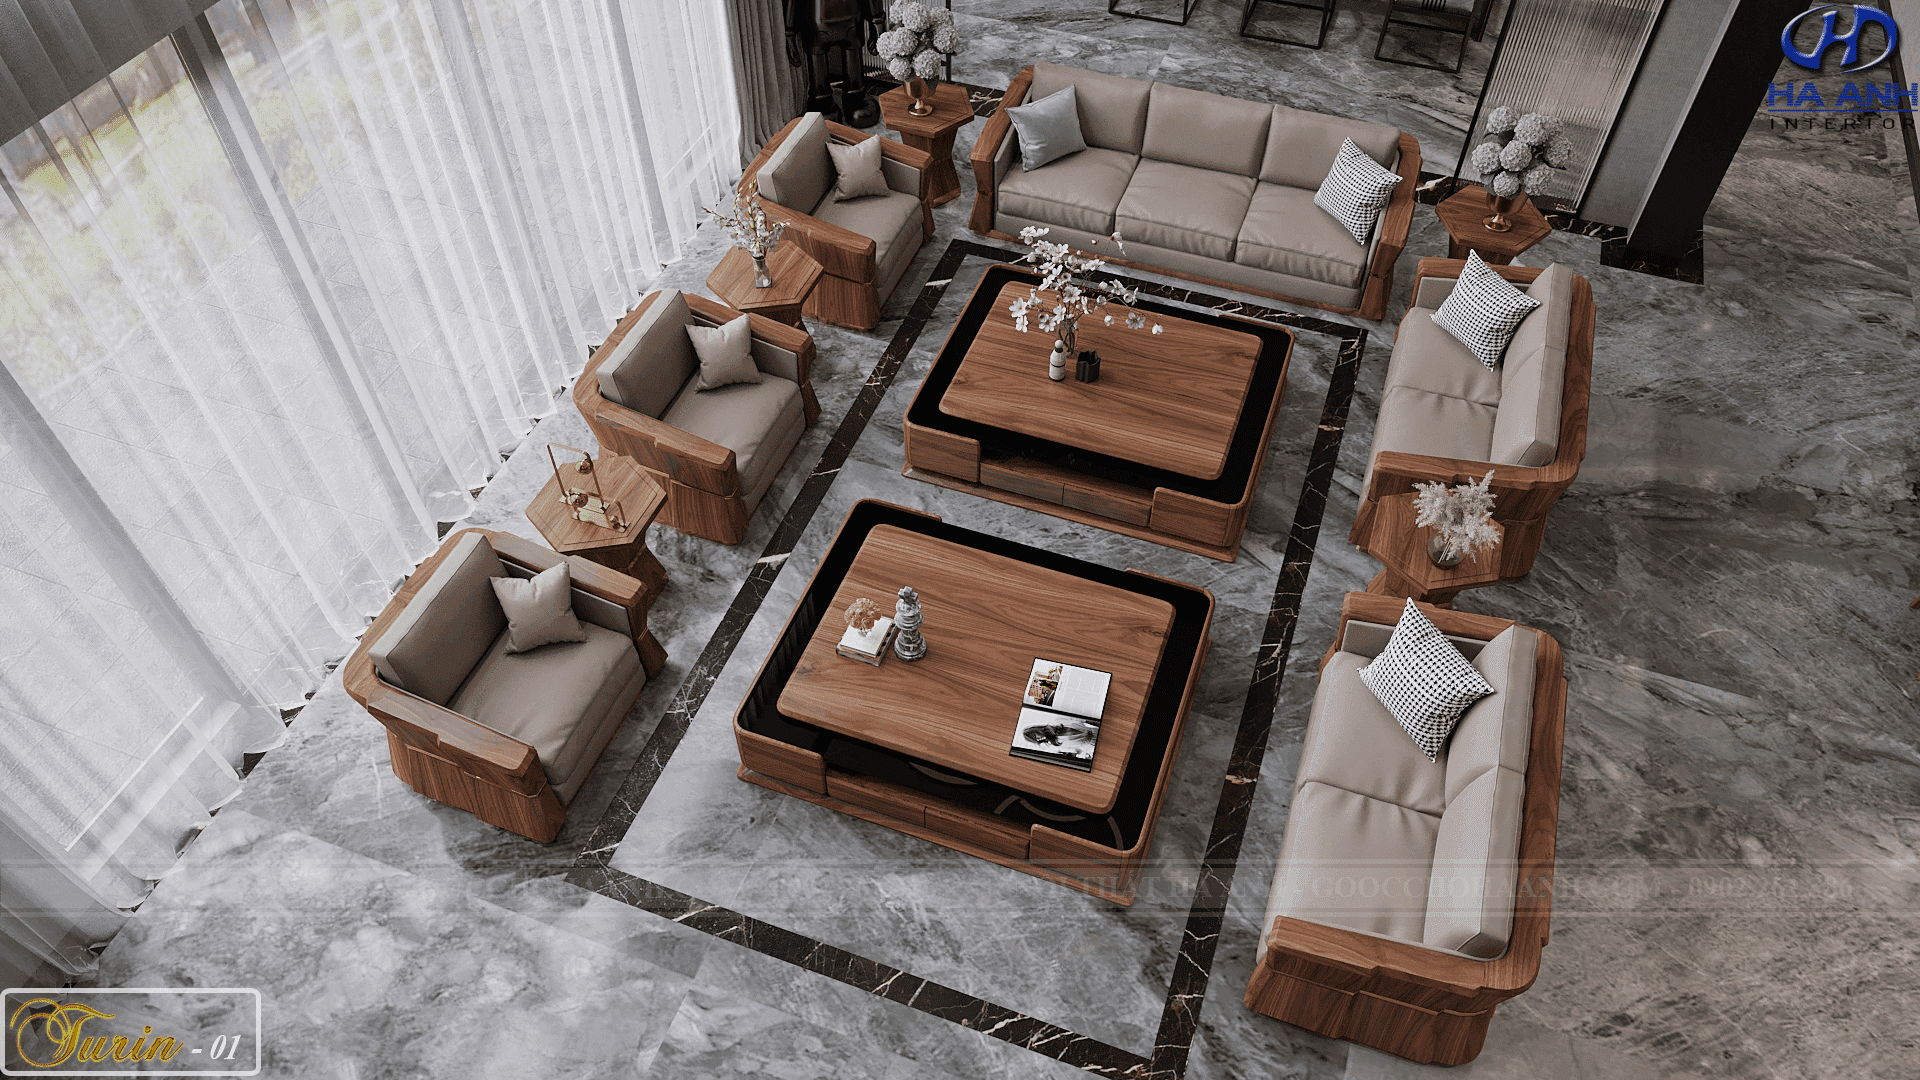 Sofa gỗ óc chó tự nhiên Turin 01 với thiết kế tinh tế